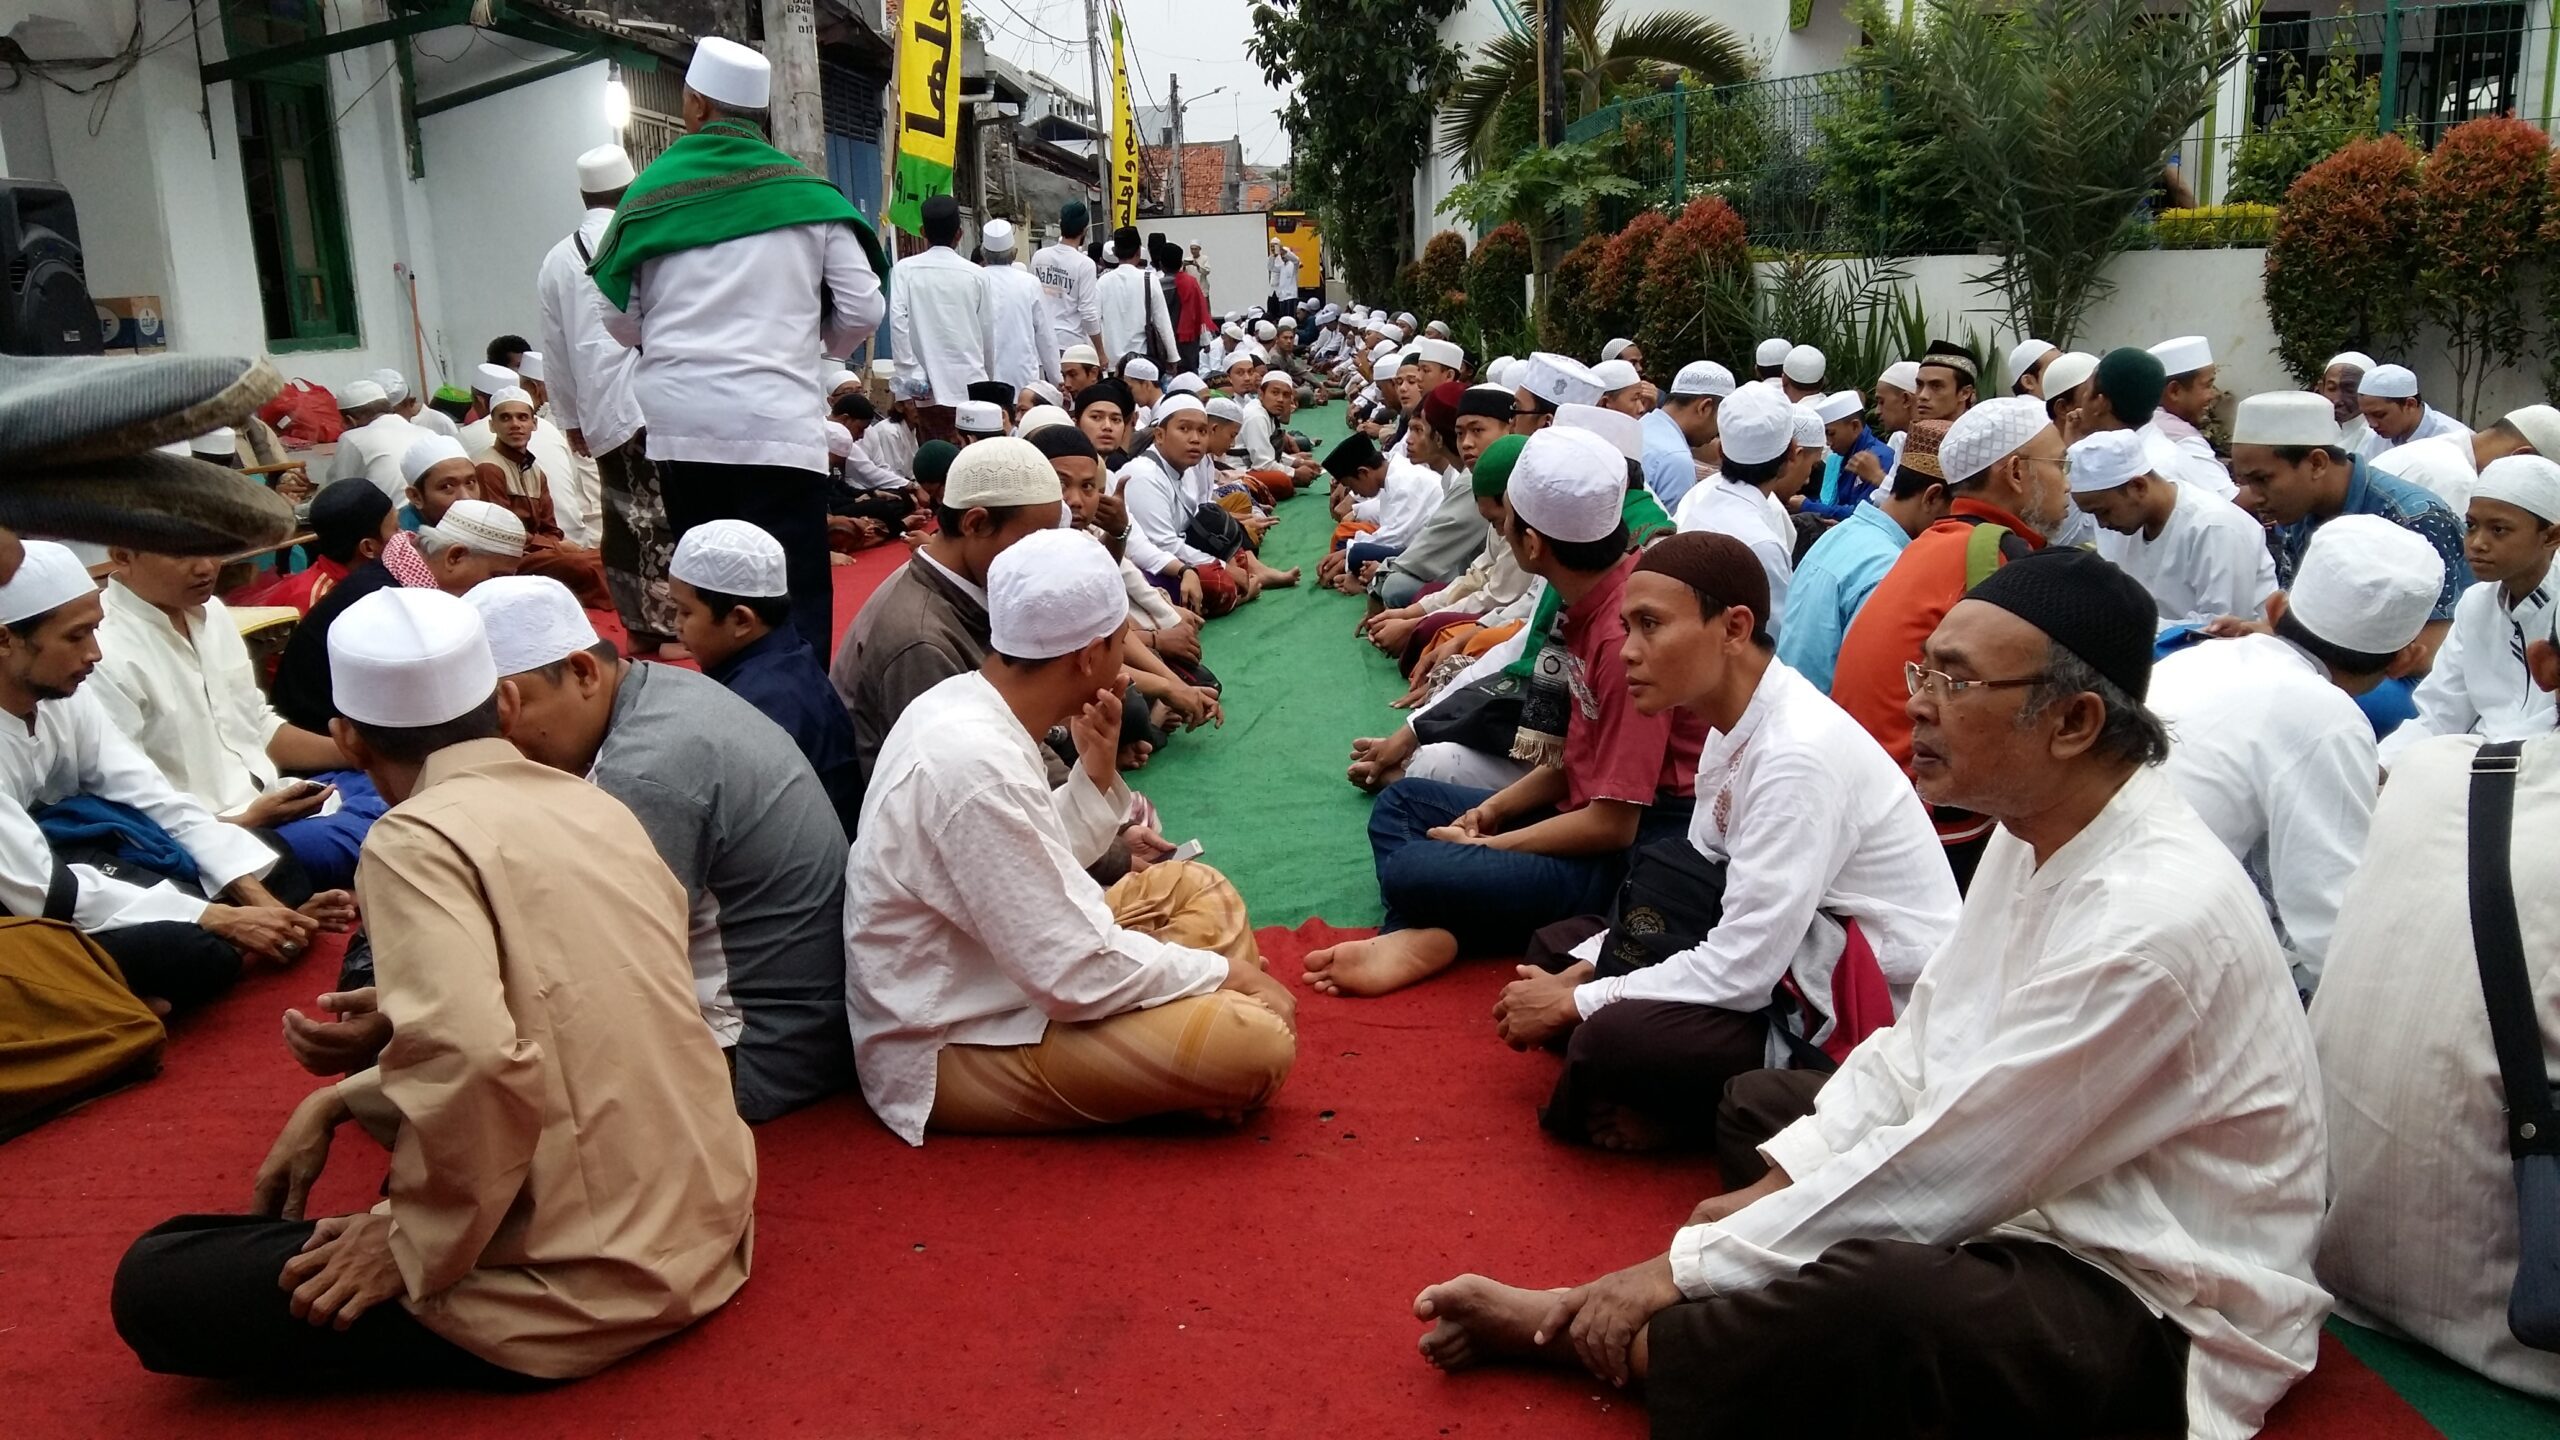 Ramadan sejuk: Nuansa kebersamaan beragam etnis di Pekojan